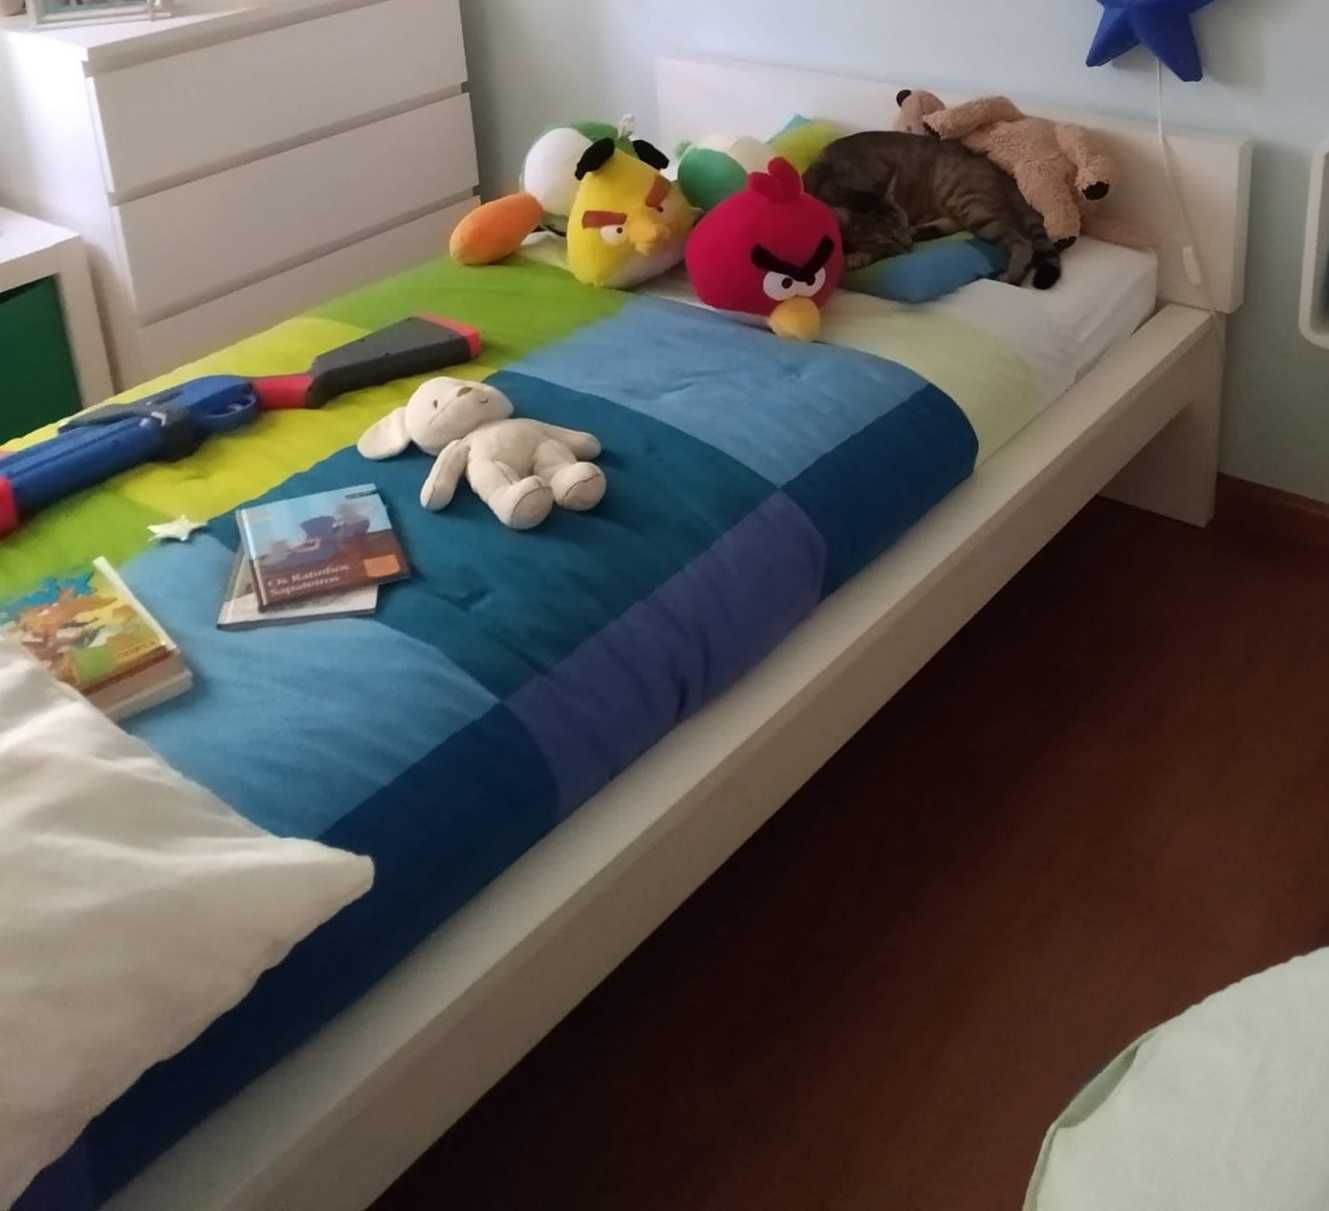 2 camas completas (estrado + colchão) como novas - 250€ cada conjunto